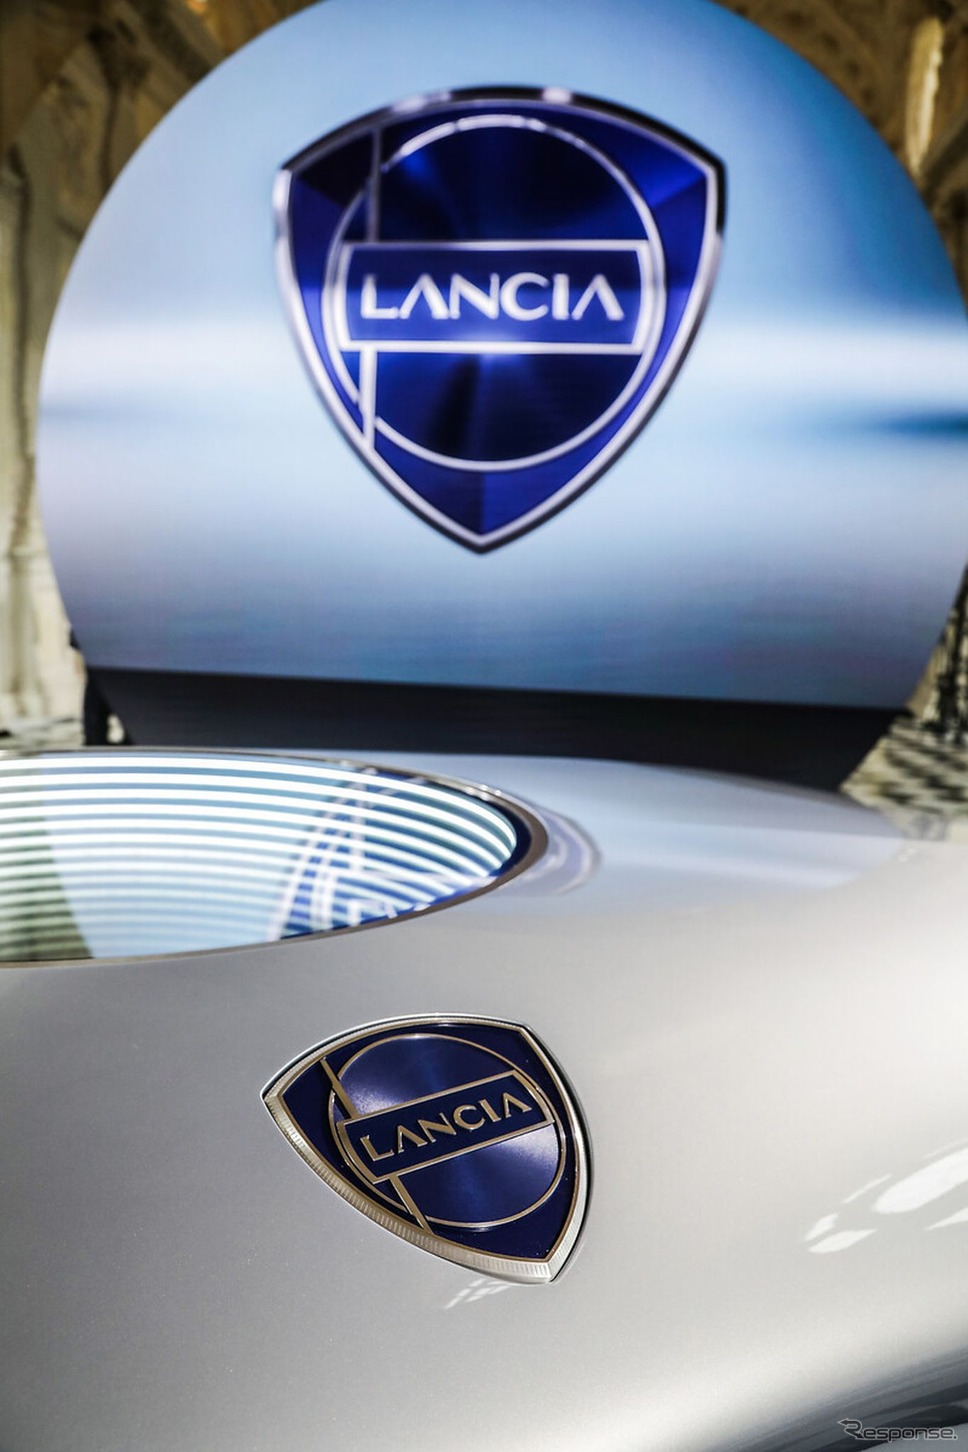 ランチアの新しいロゴマーク《photo by Lancia》